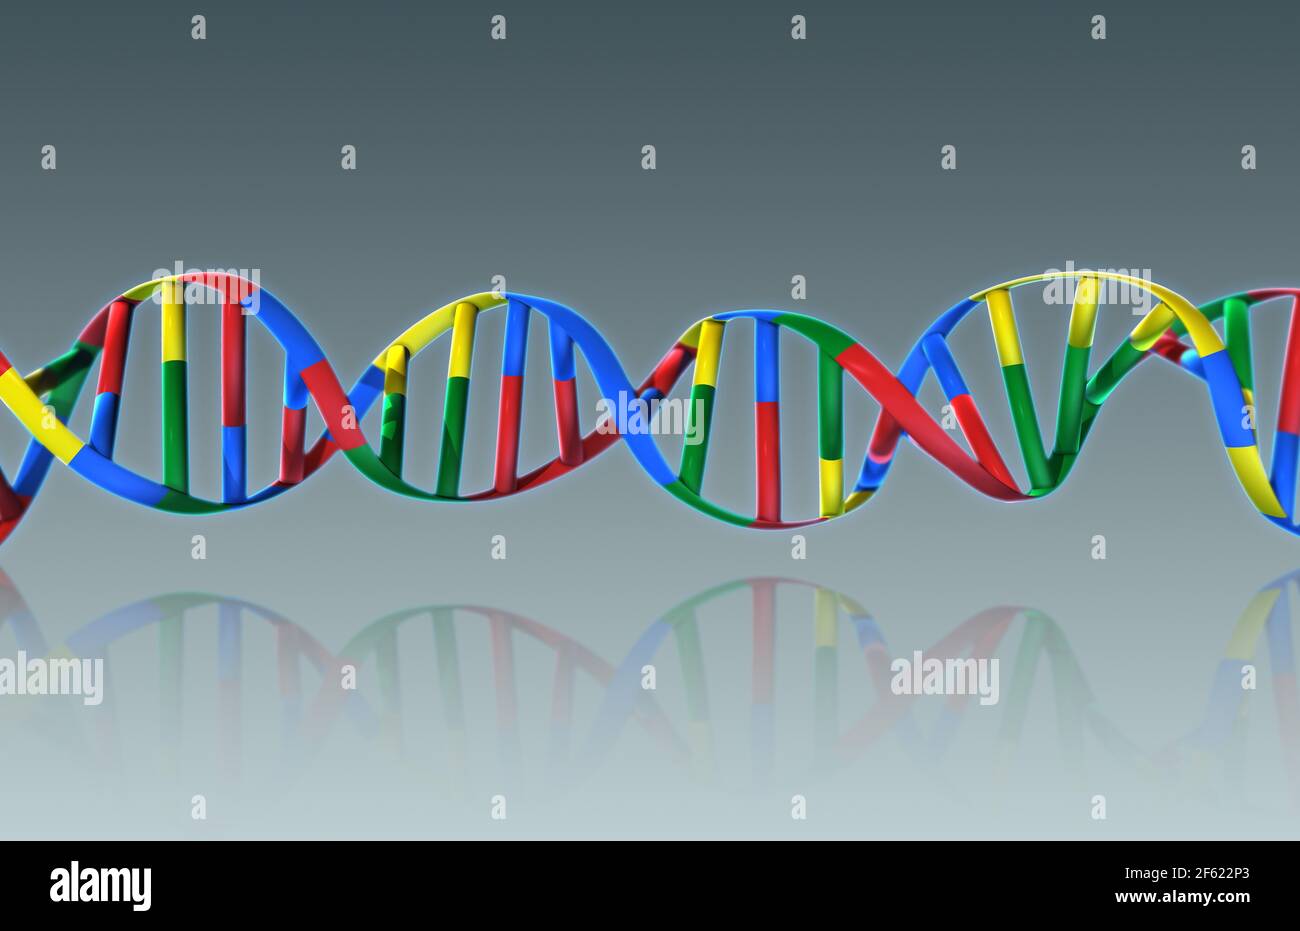 DNA, Ribbon Model Stockfoto